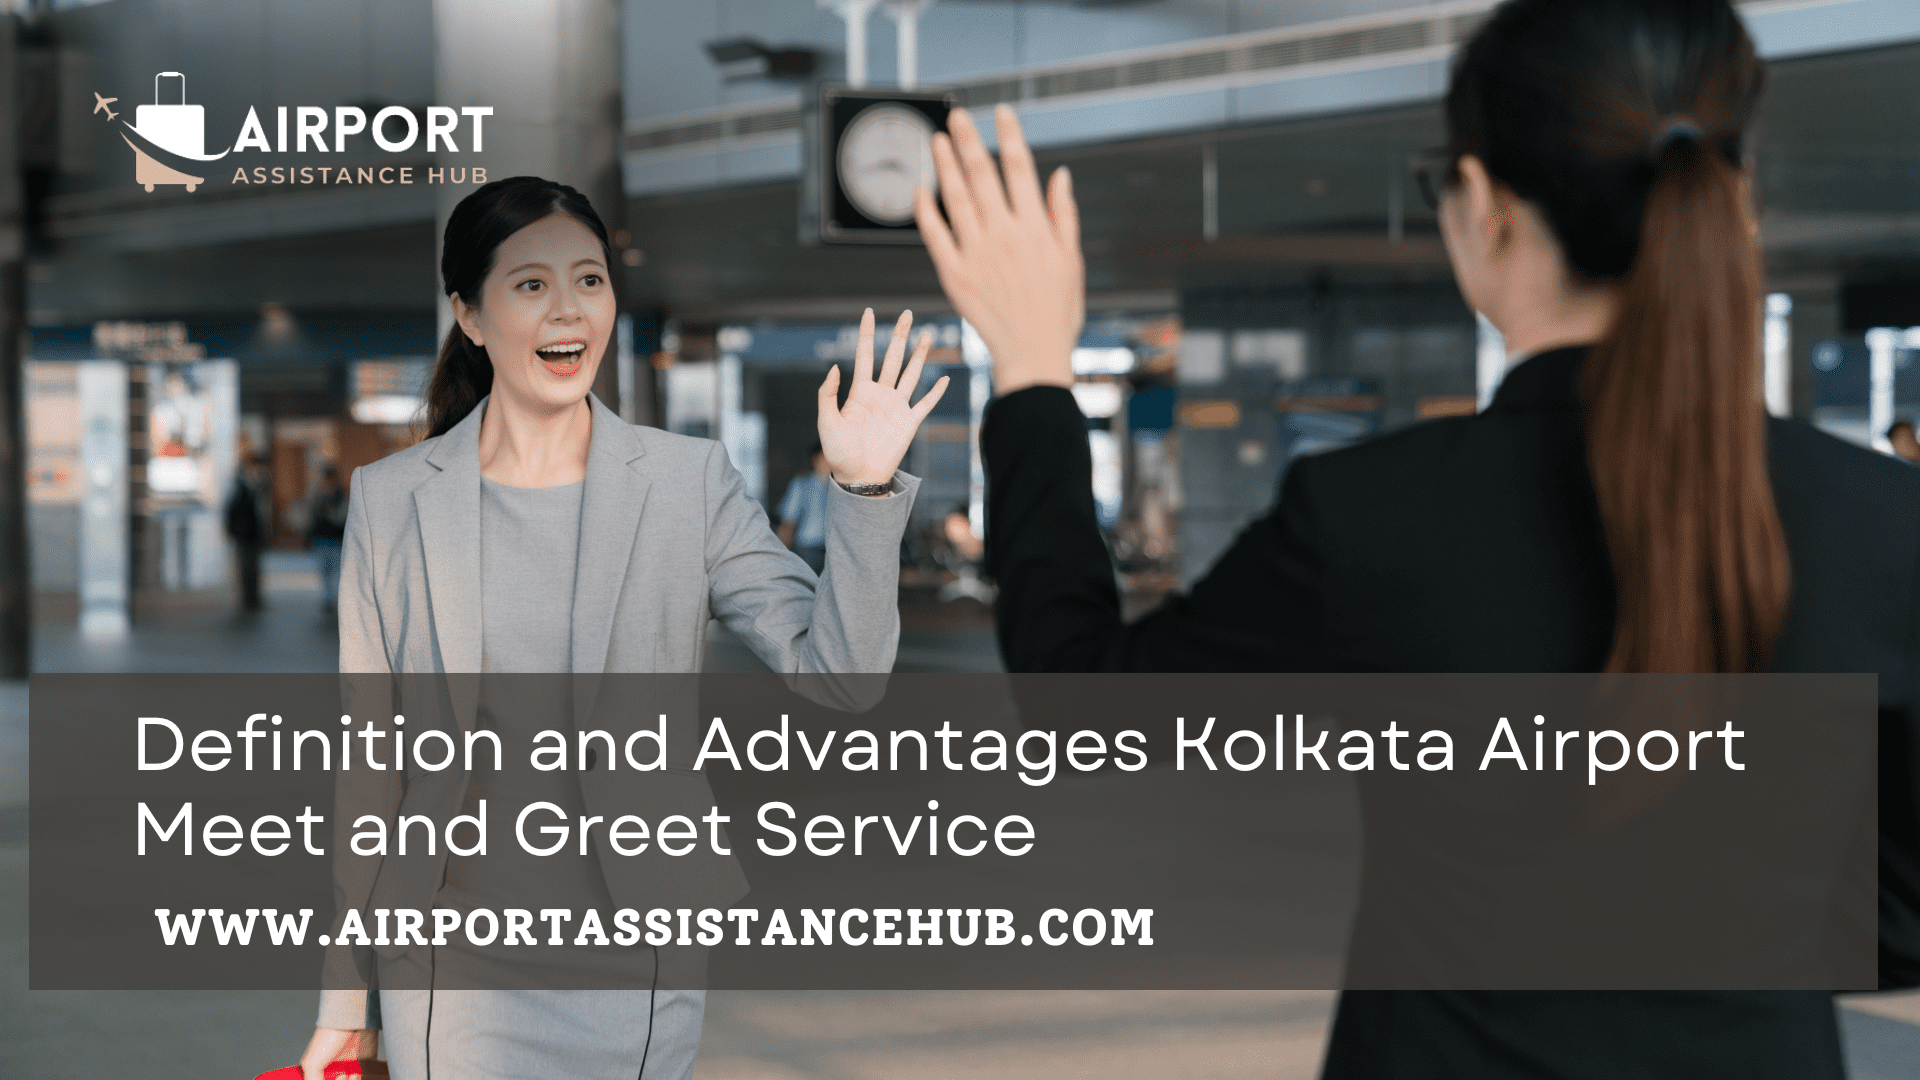 Kolkata Airport Meet and Greet Service